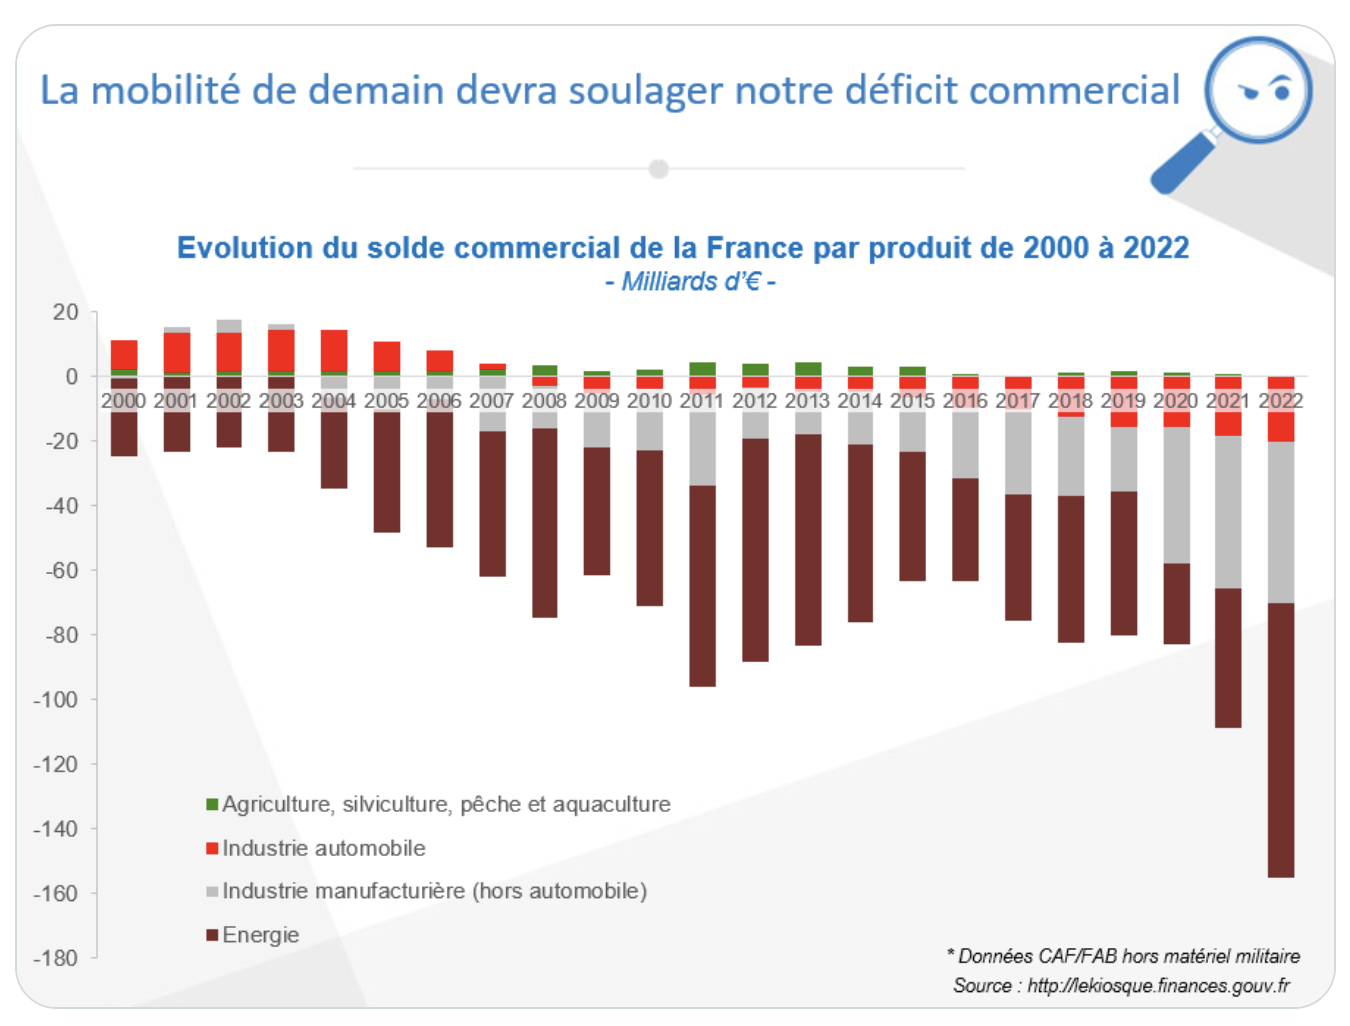 Et si le déficit commercial de la France en 2022 atteignait 150 milliards ?